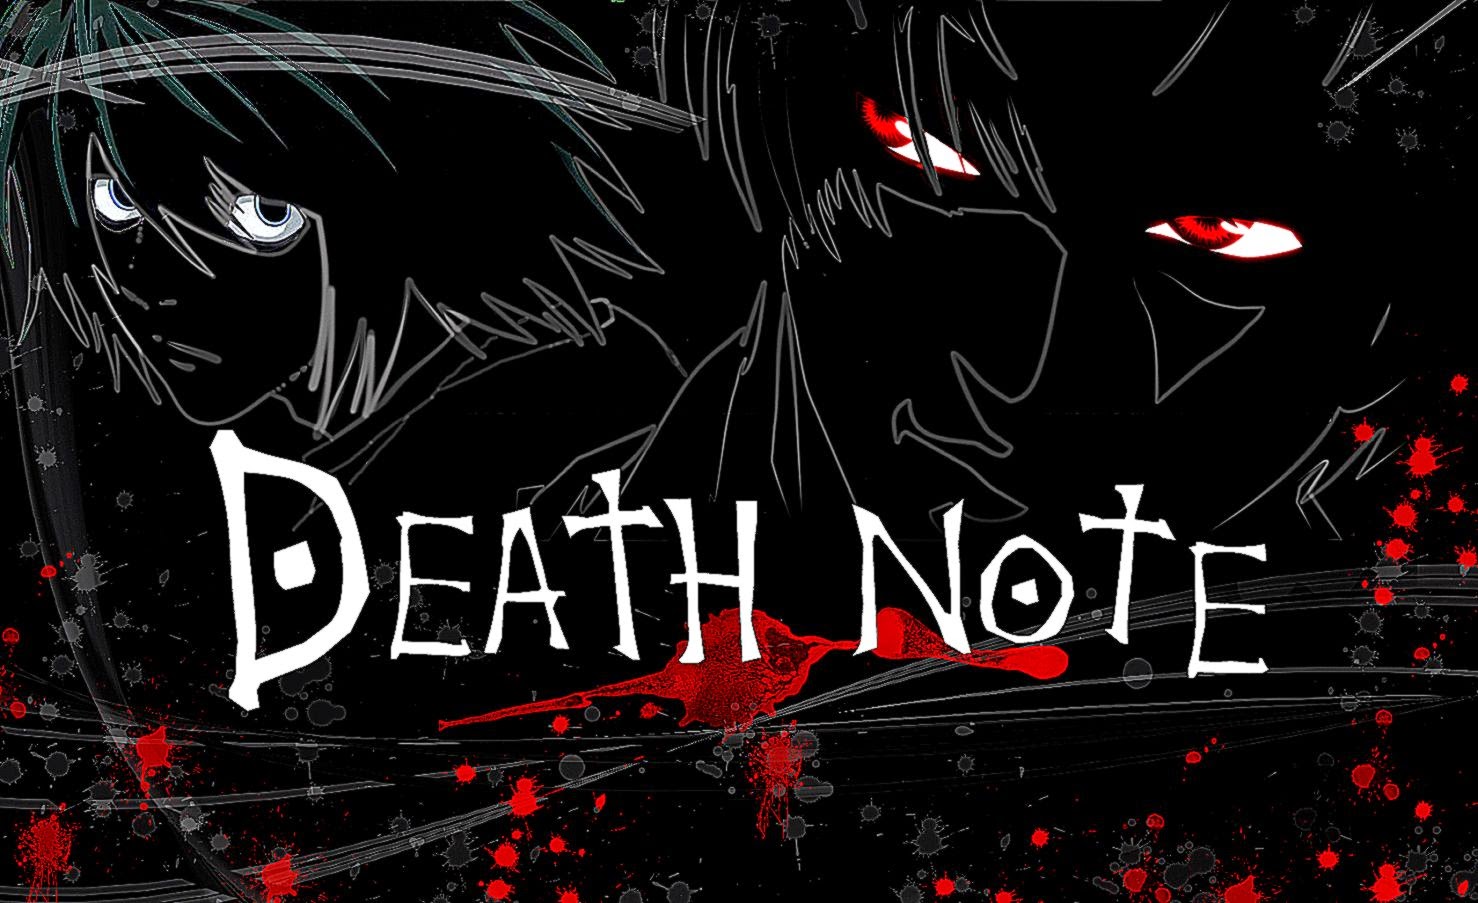 Beautiful Death Note Wallpaper Hd Desktop - Death Note Wallpaper Pc - HD Wallpaper 